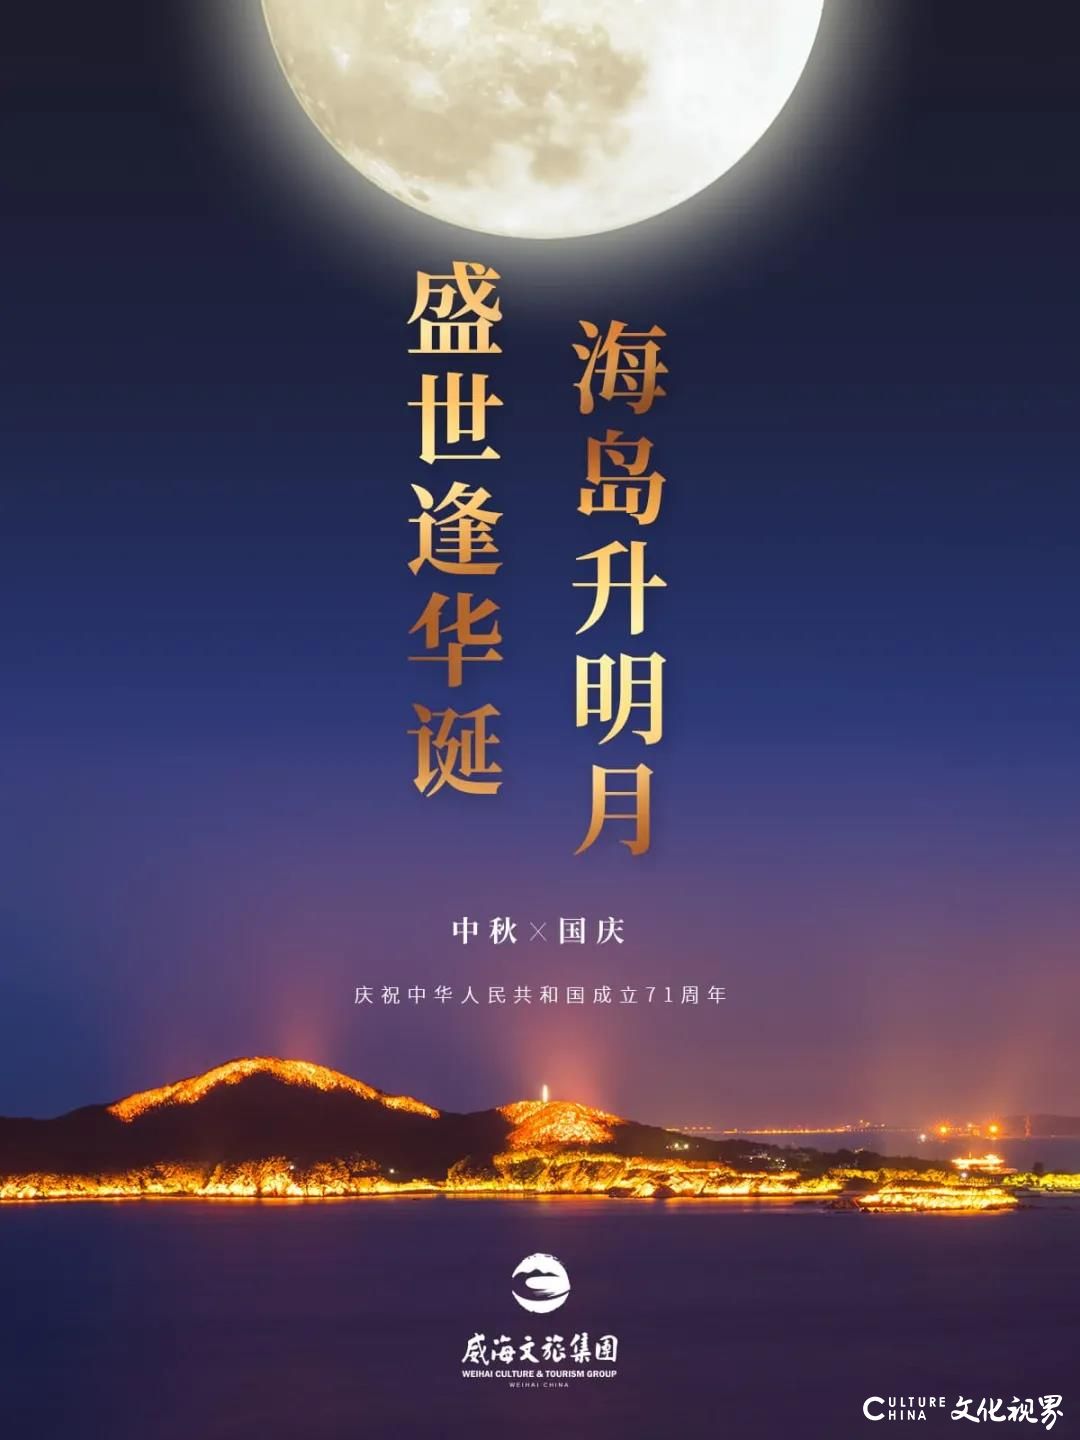 威海文旅集团在刘公岛奏响祝福祖国主旋律，向新中国七十一华诞献礼